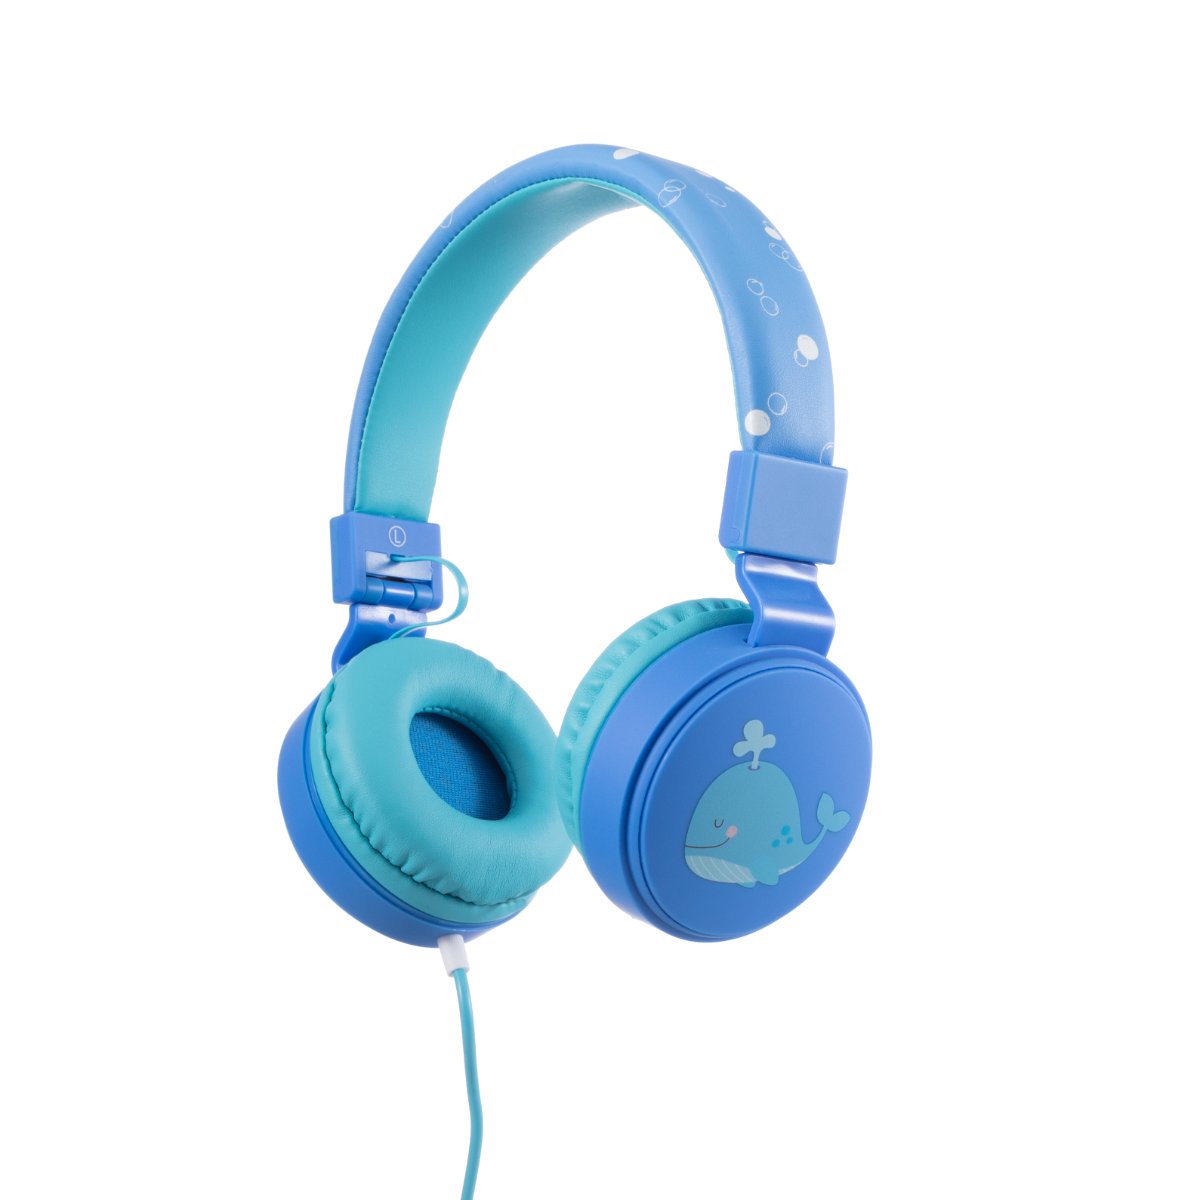 Noah the Whale Headphones Blue